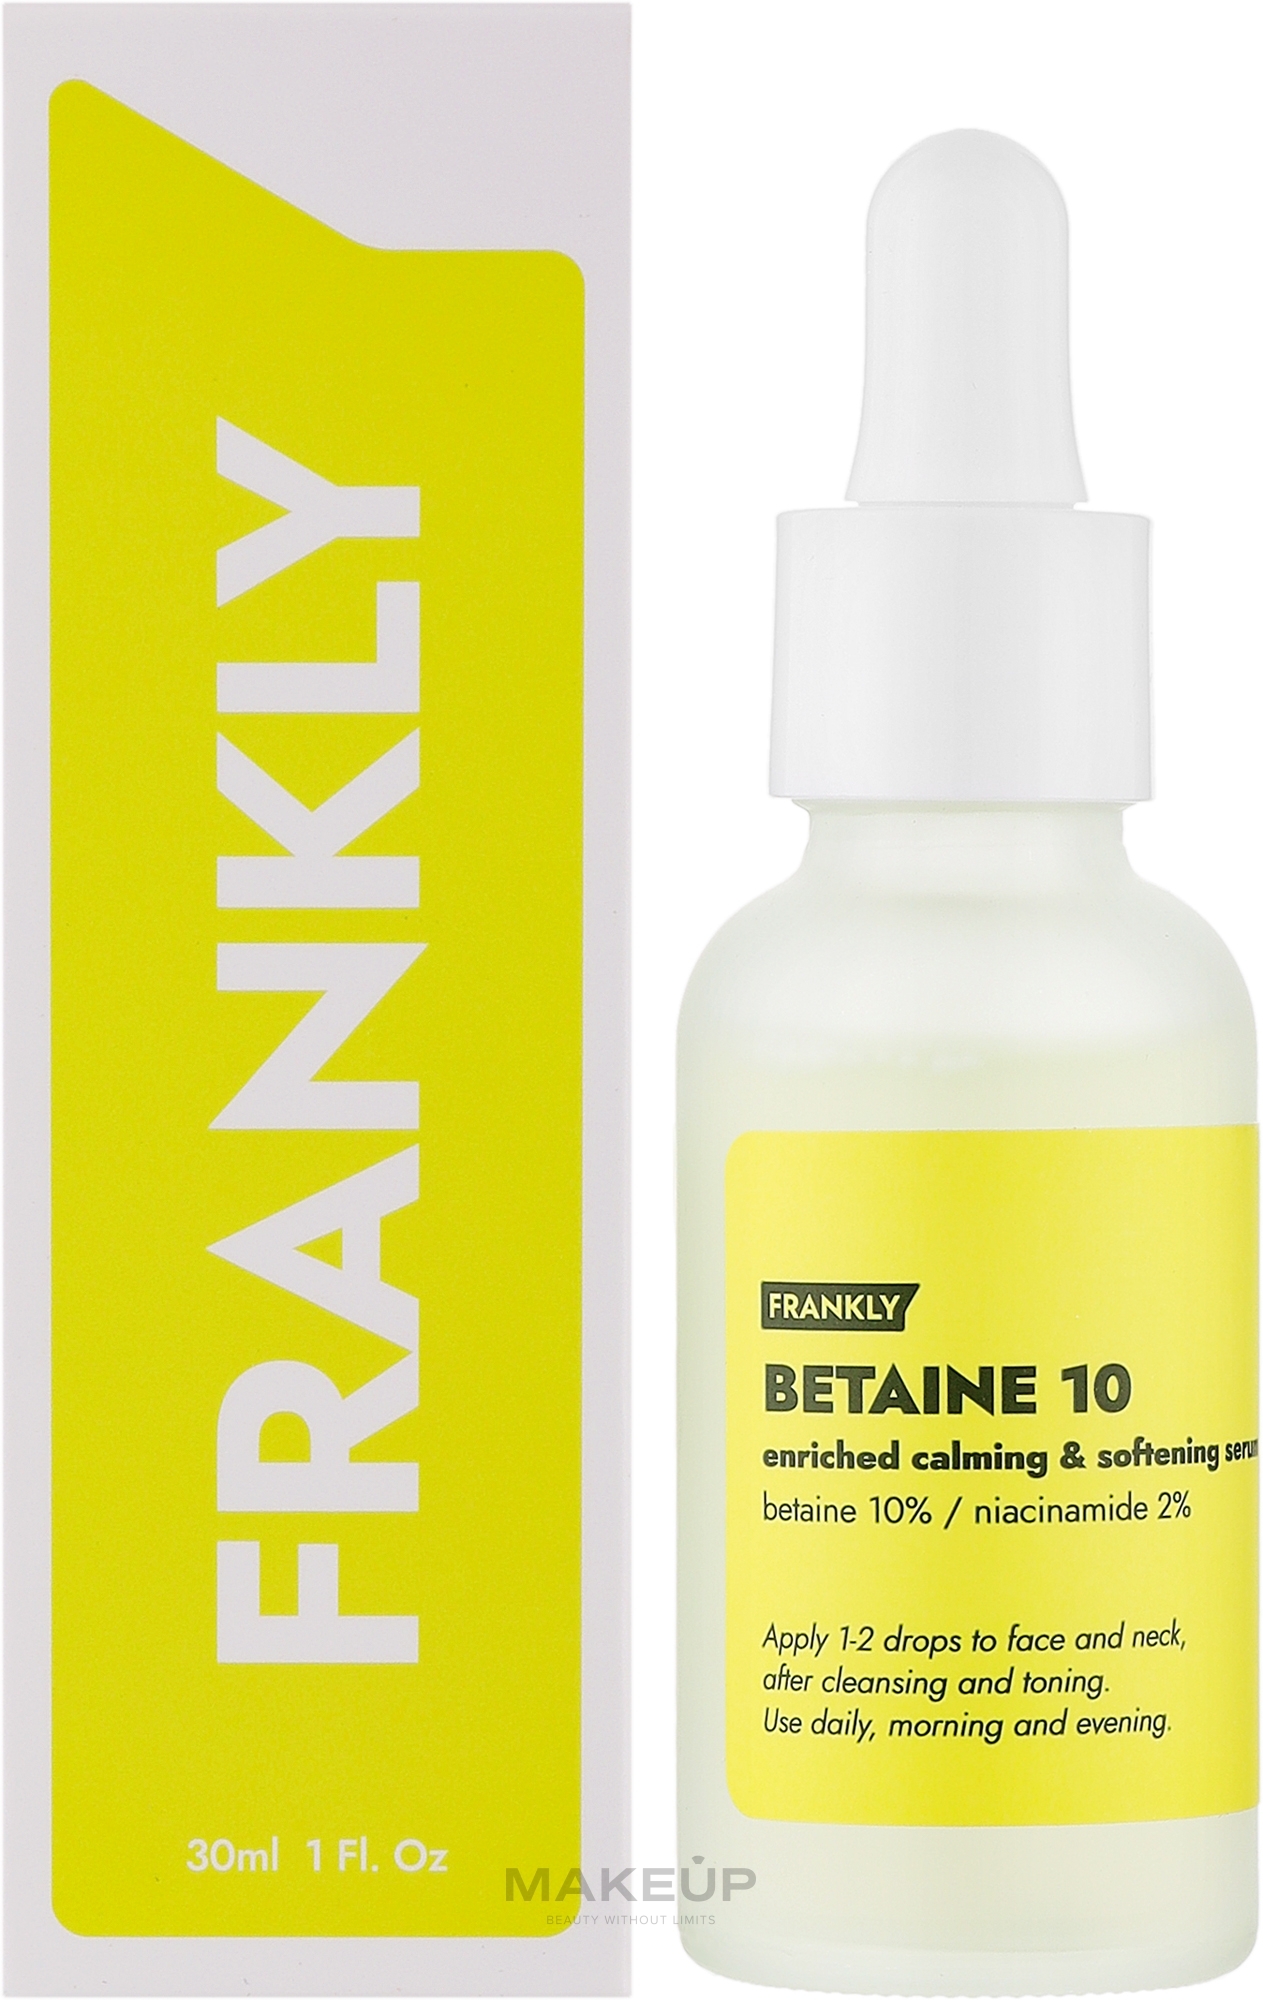 Сыворотка для успокоения и смягчения кожи - Frankly Betaine 10 Serum — фото 30ml